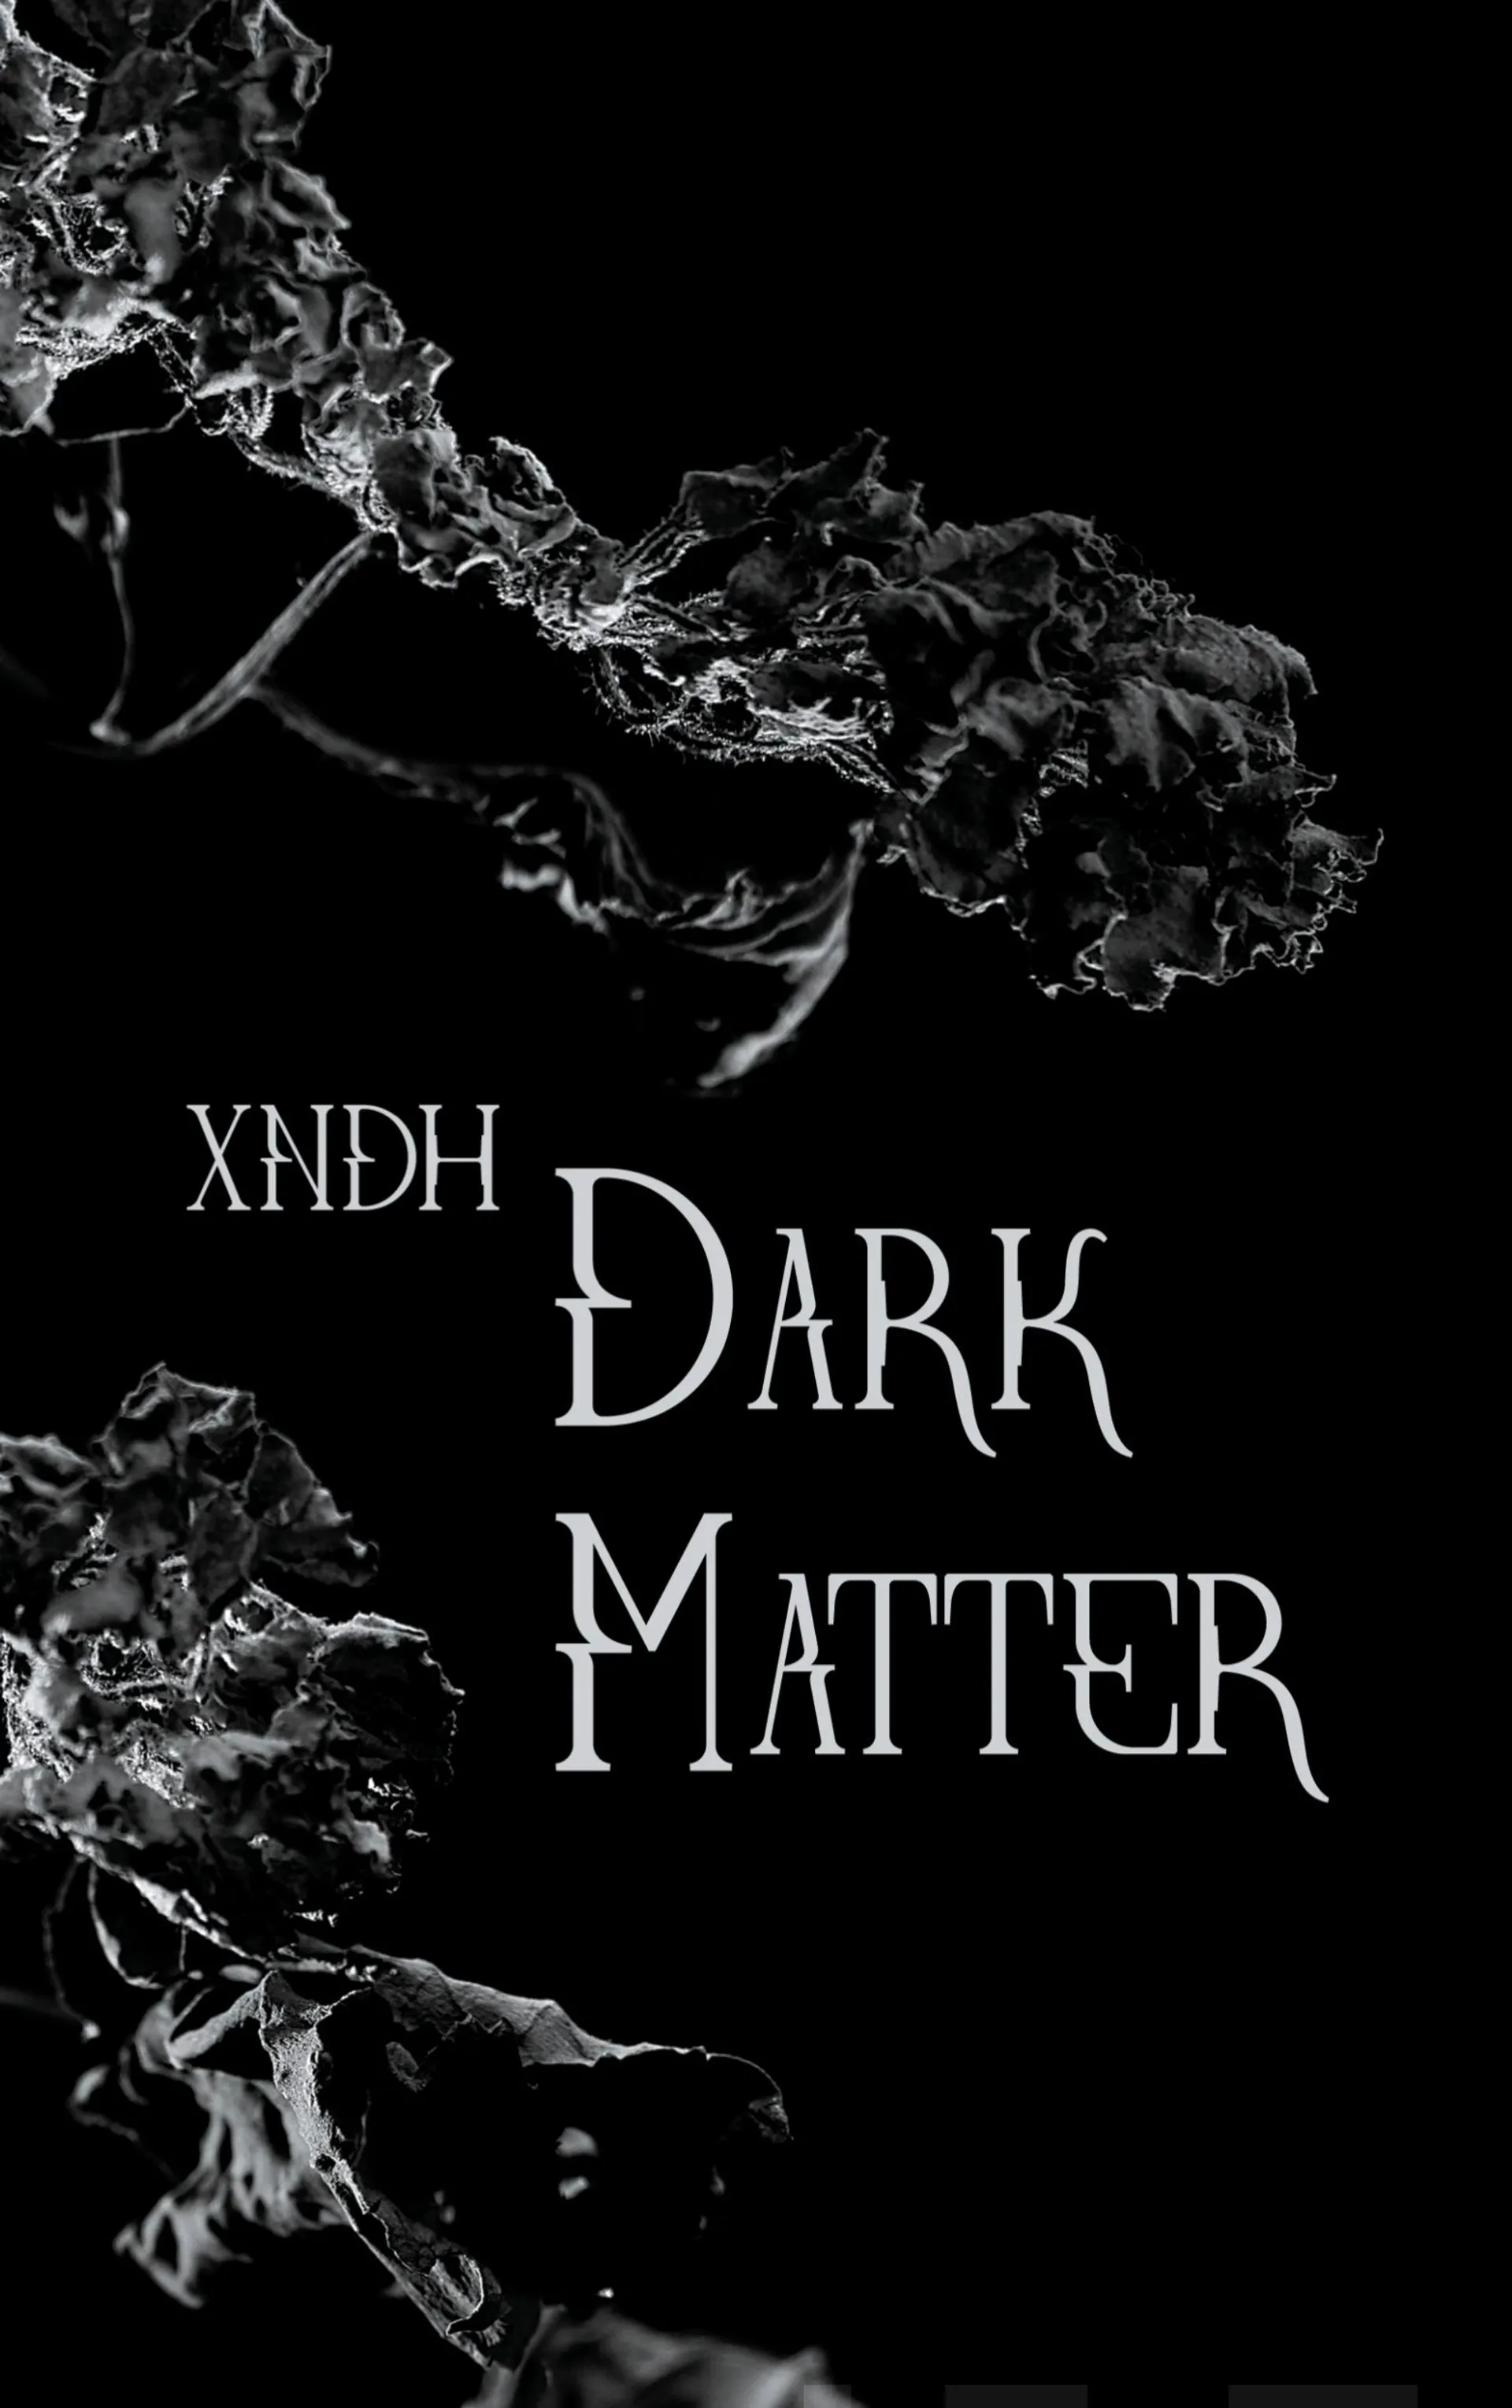 xndh, Dark matter